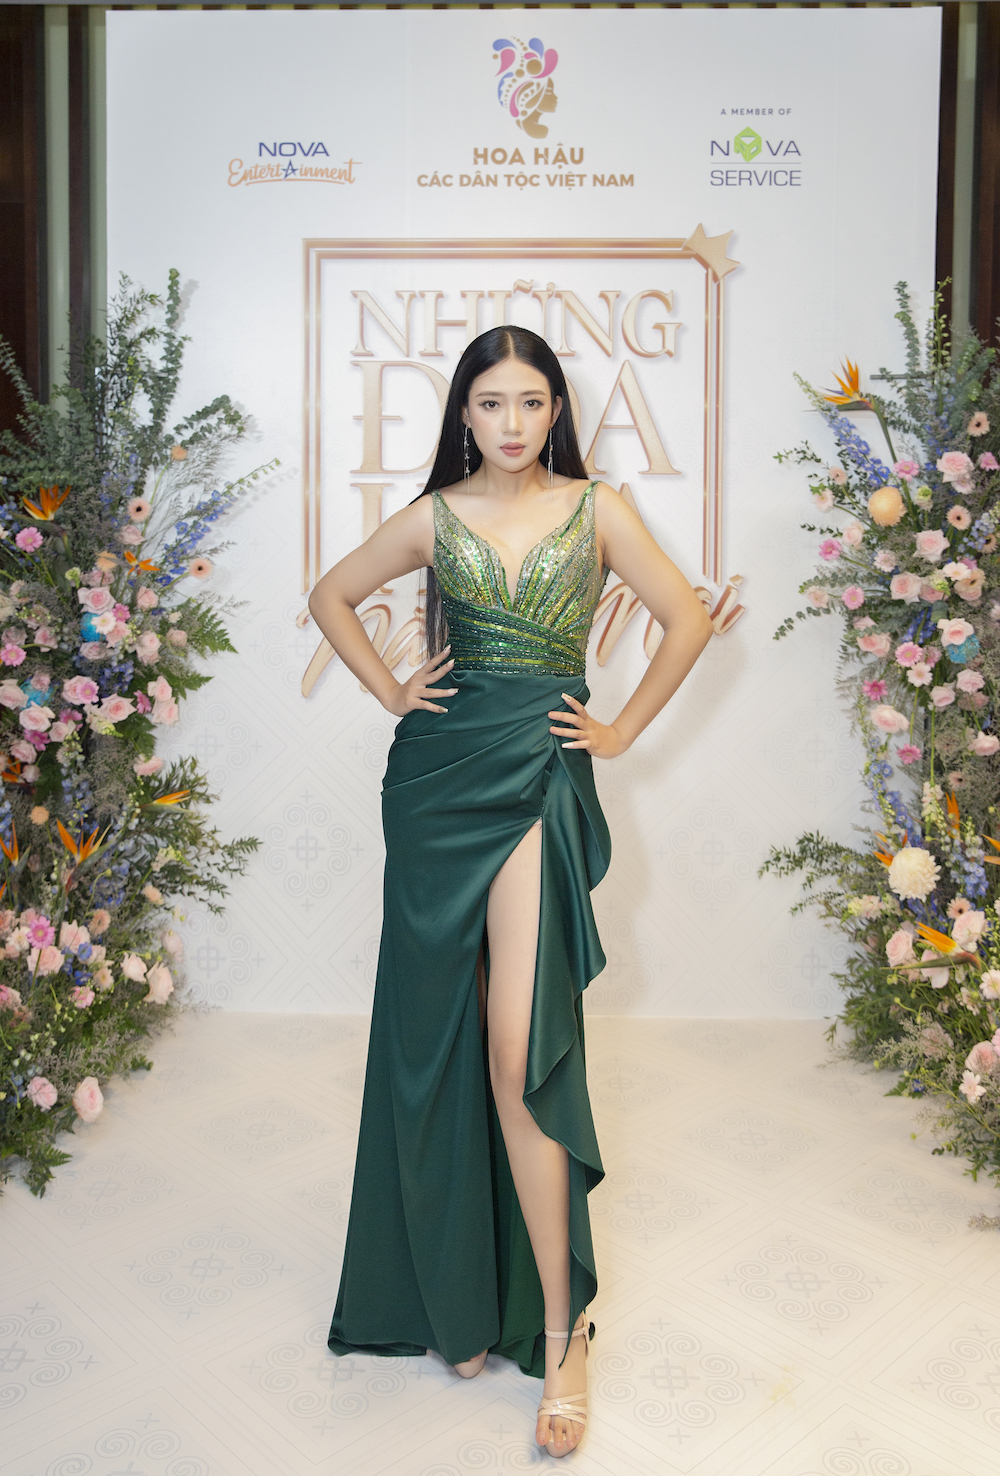 Hoa hậu các Dân tộc Việt Nam - Top 30 thí sinh khu vực phía Bắc